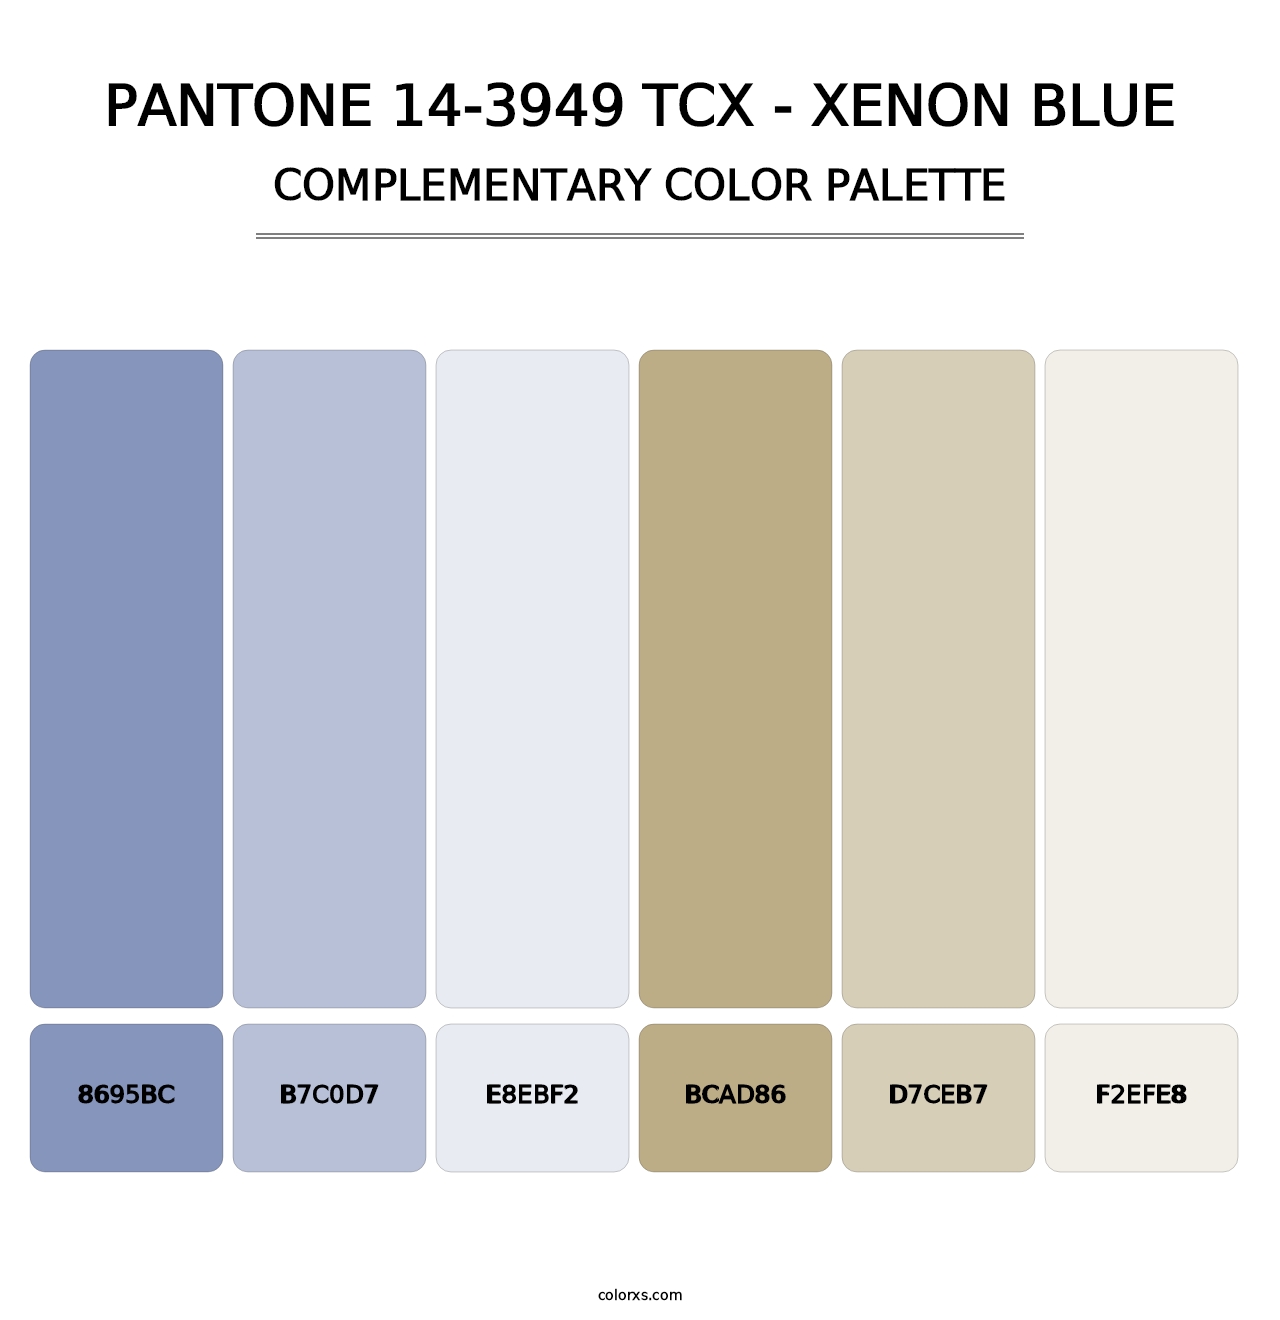 PANTONE 14-3949 TCX - Xenon Blue - Complementary Color Palette